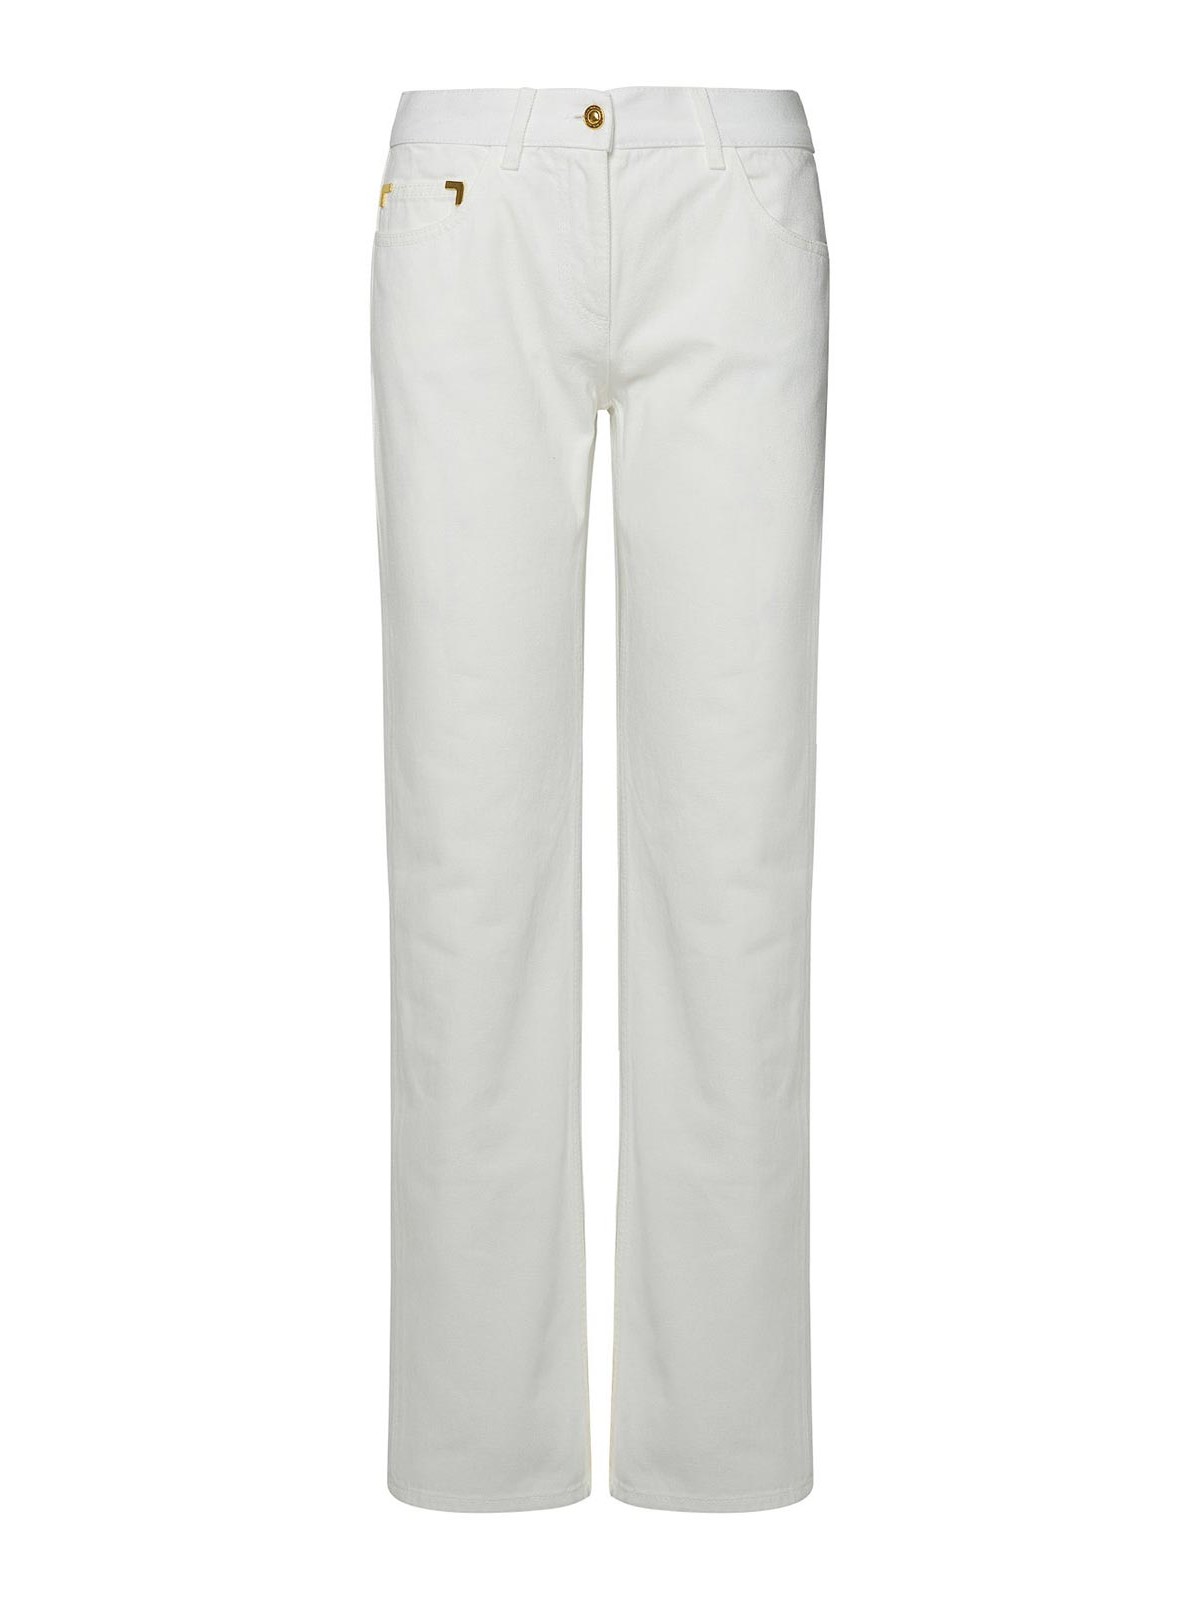 Shop Palm Angels White Cotton Jeans